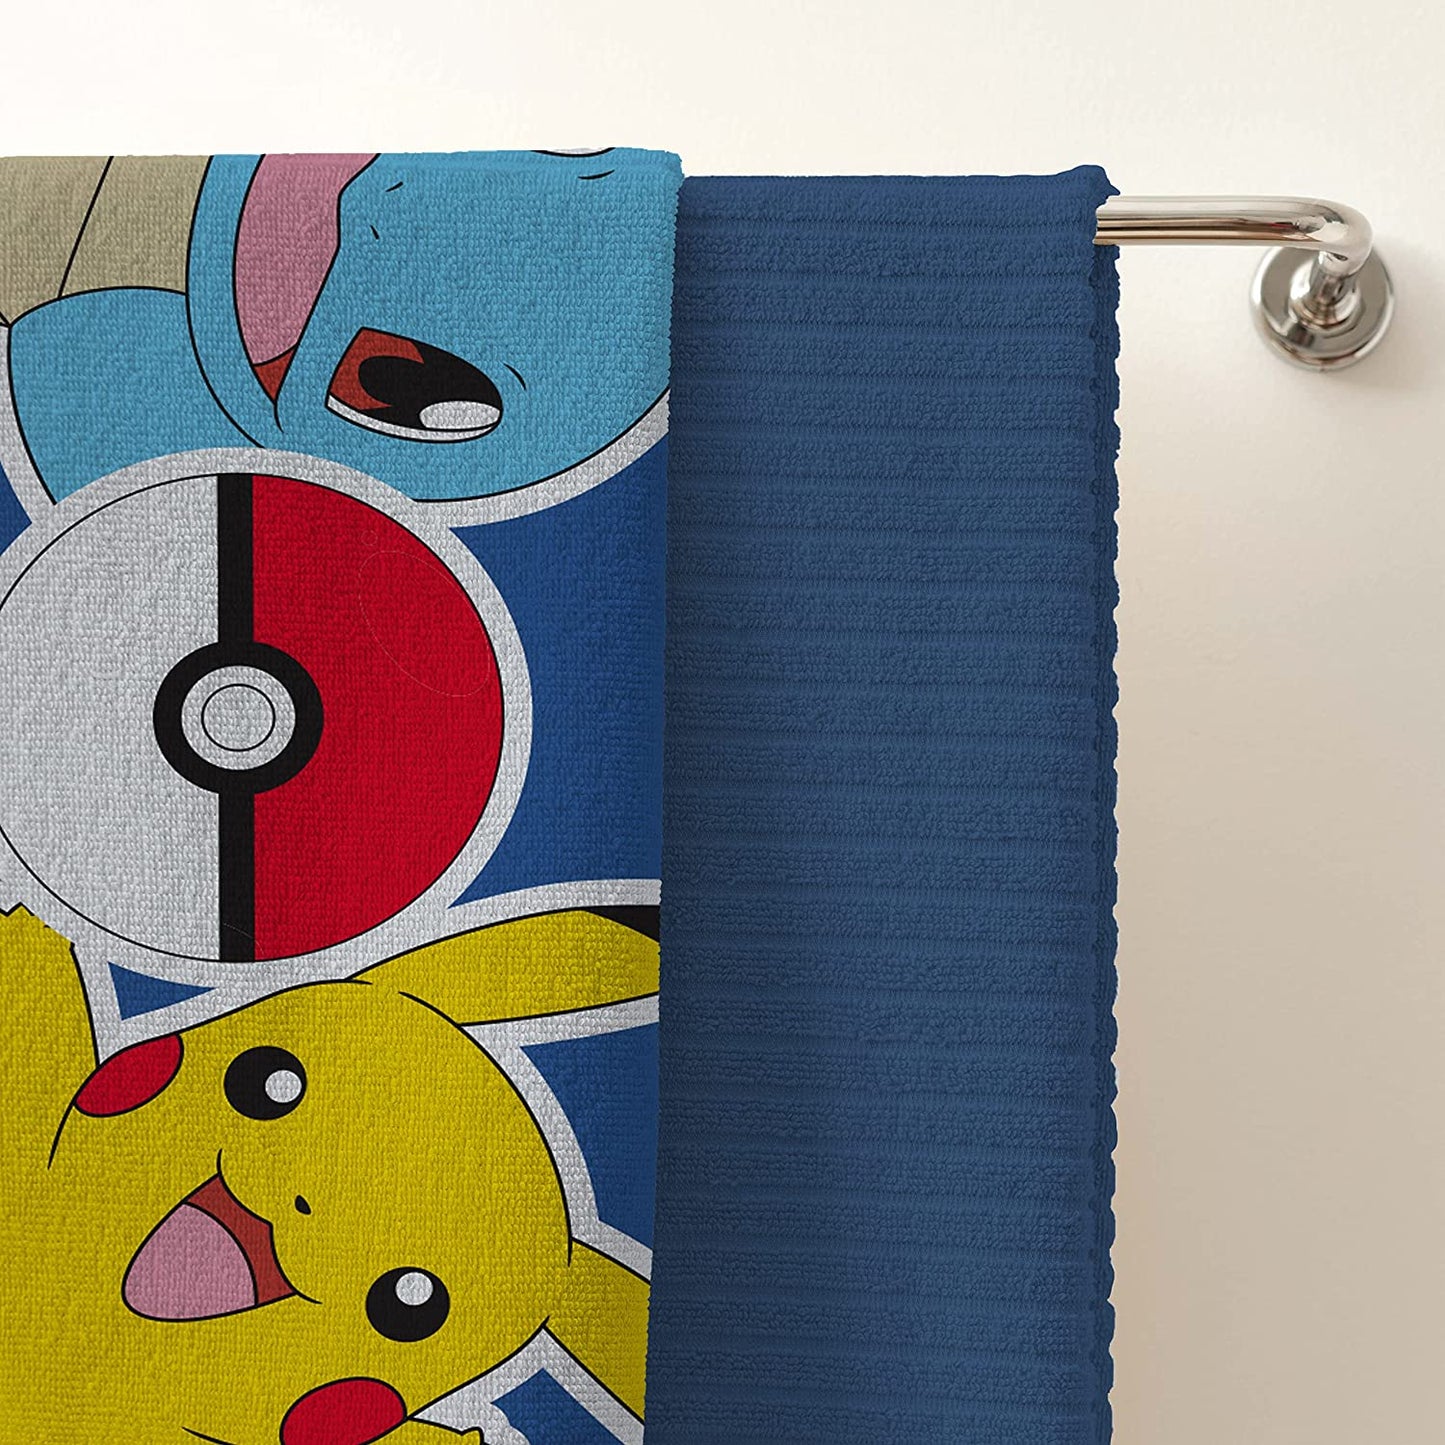 Official Pokémon Pikachu & Squirtle Character 100% Cotton Velour Beach Towel